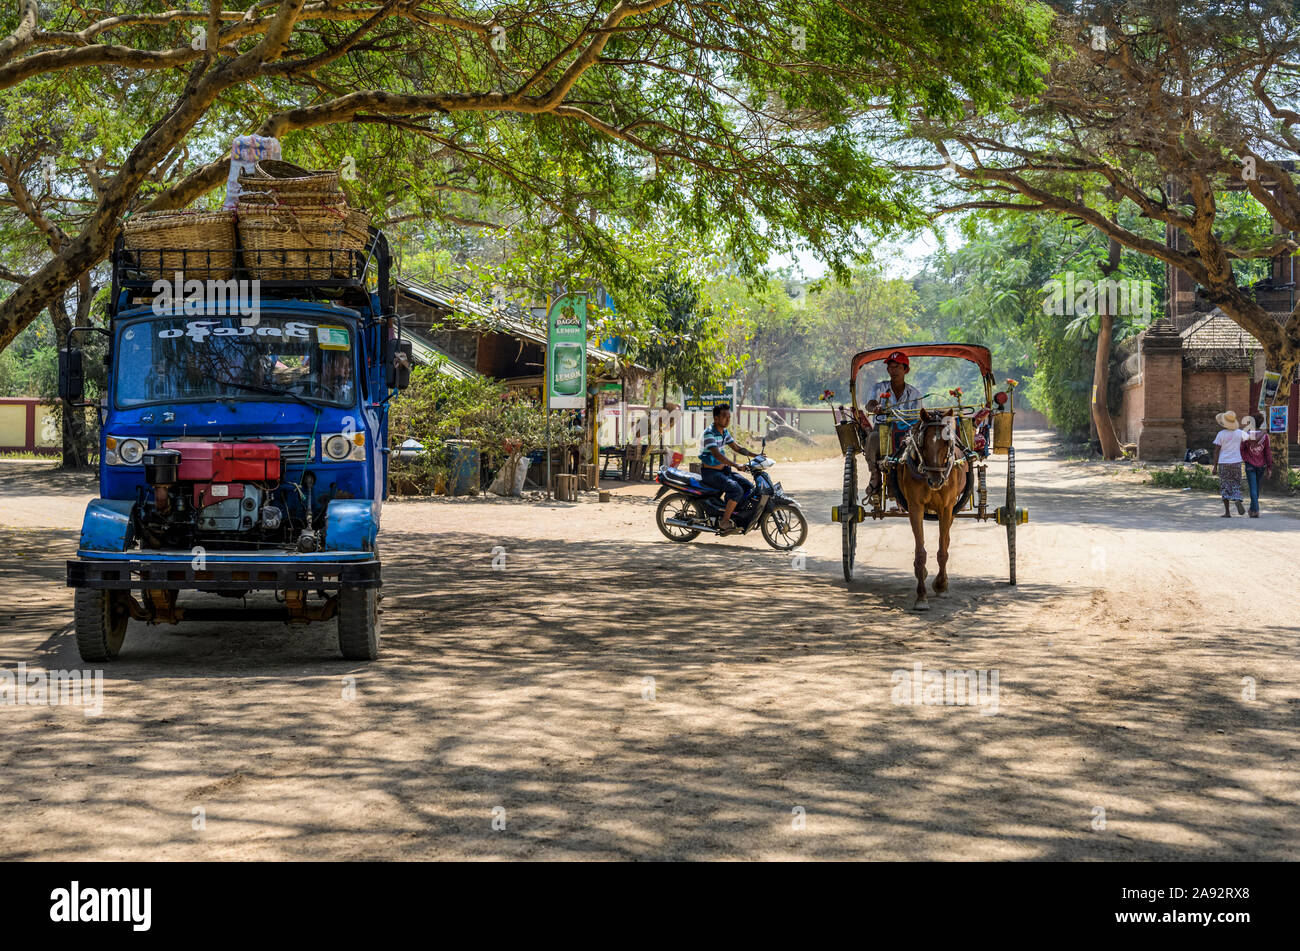 Divers modes de transport sur une rue avec un camion, une moto, un cheval et une calèche; Bagan, région de Mandalay, Myanmar Banque D'Images